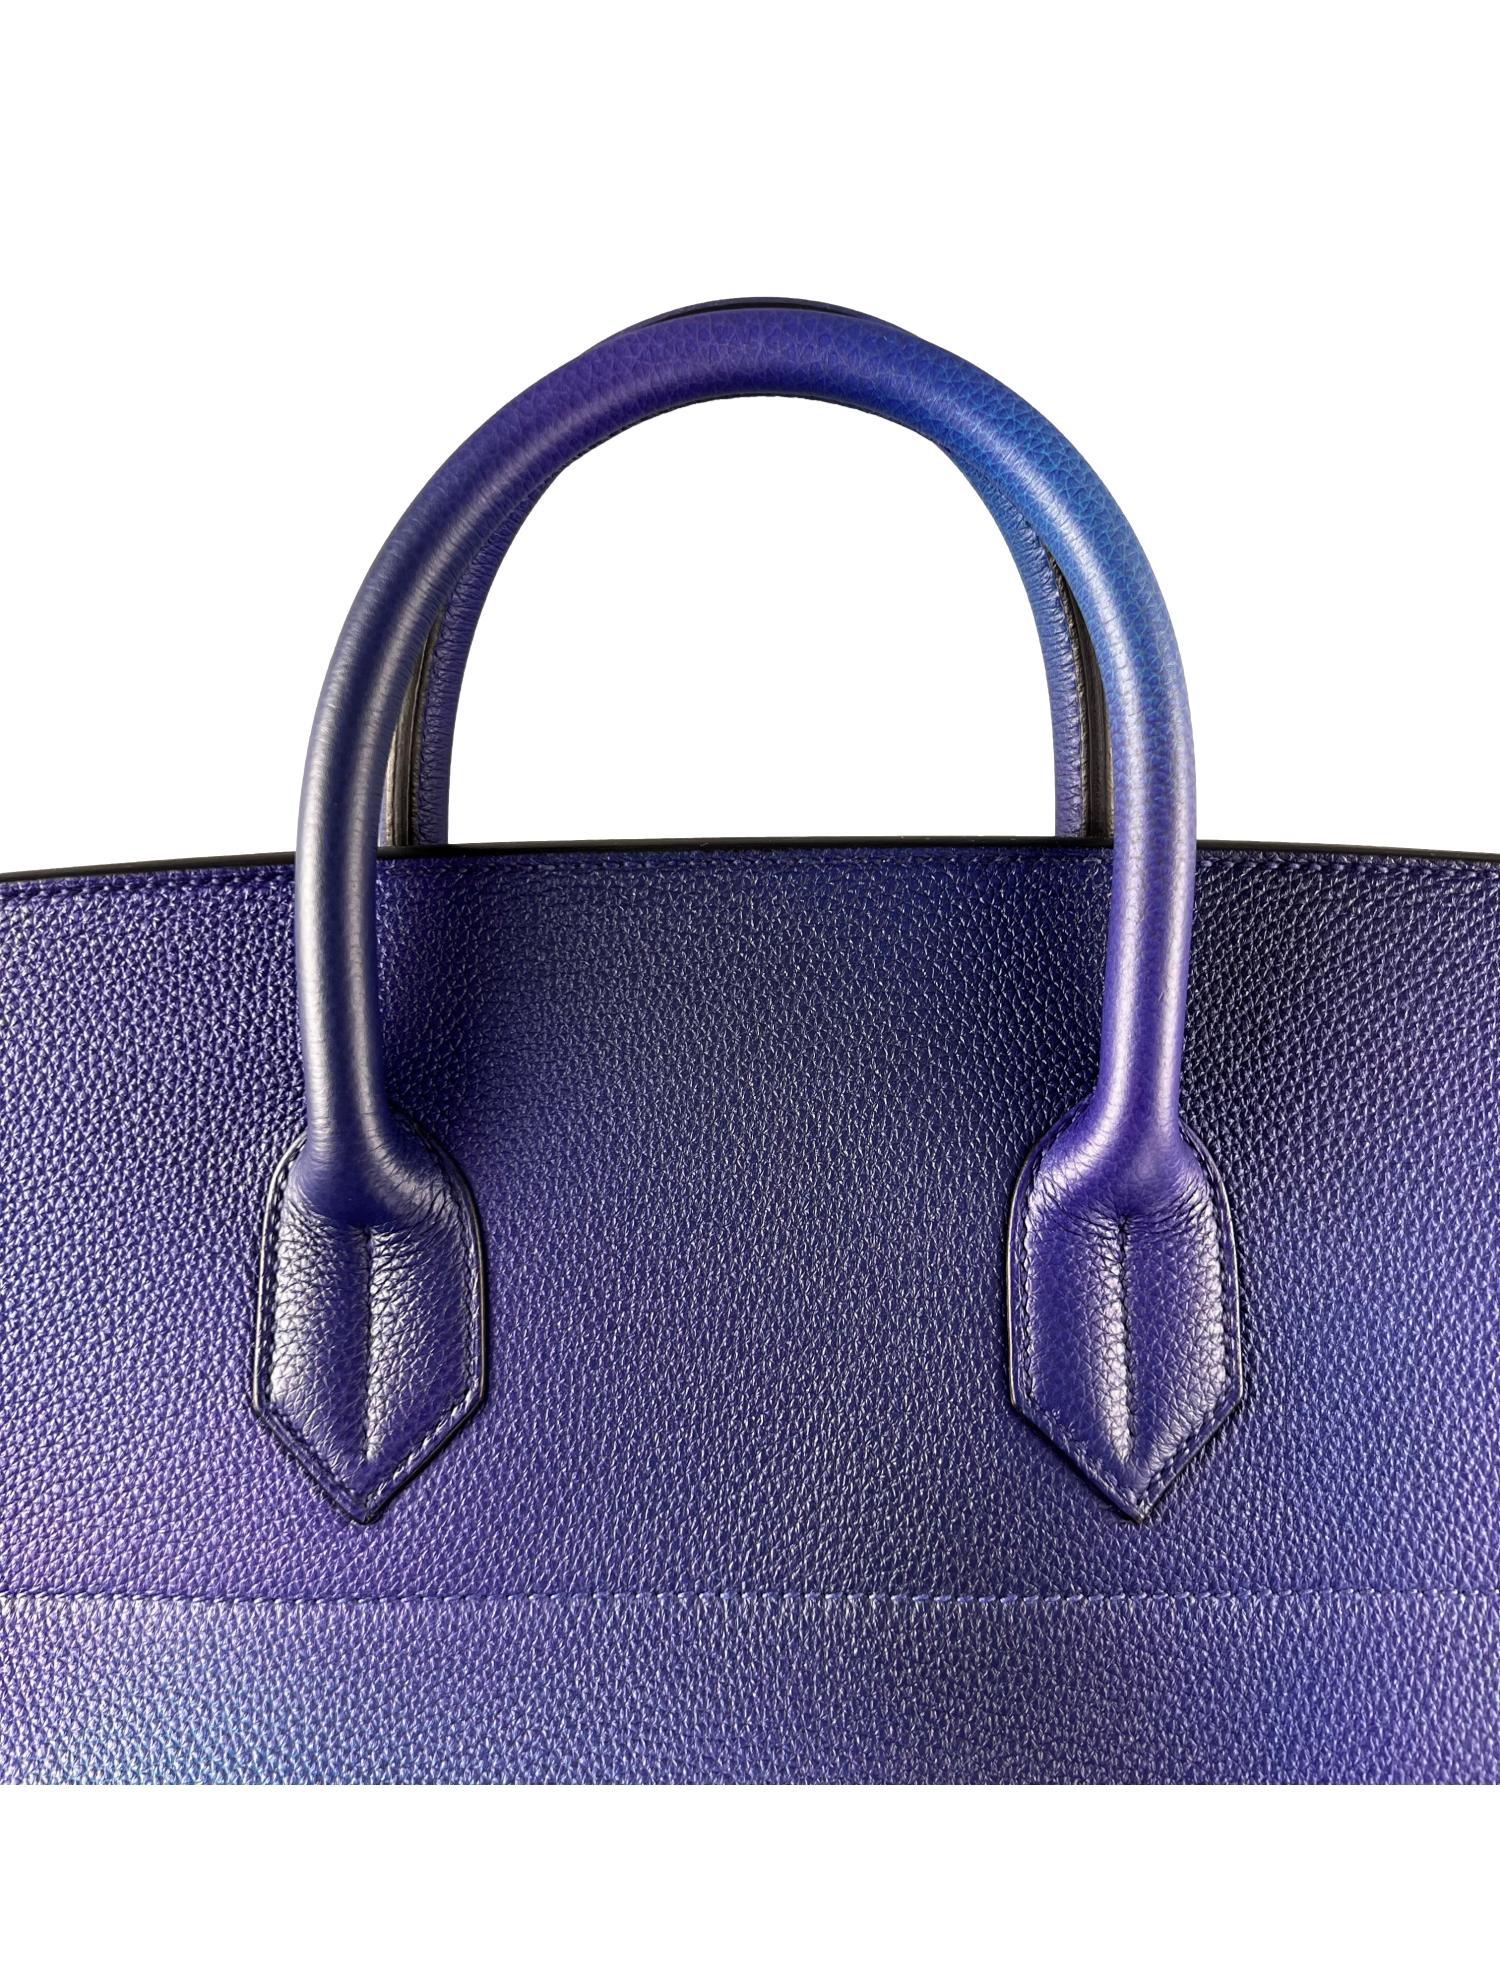 Hermès SS19 Ombré Haut à Courroies Cosmos HAC 50 Nuit Violet Limited Edition Bag 9